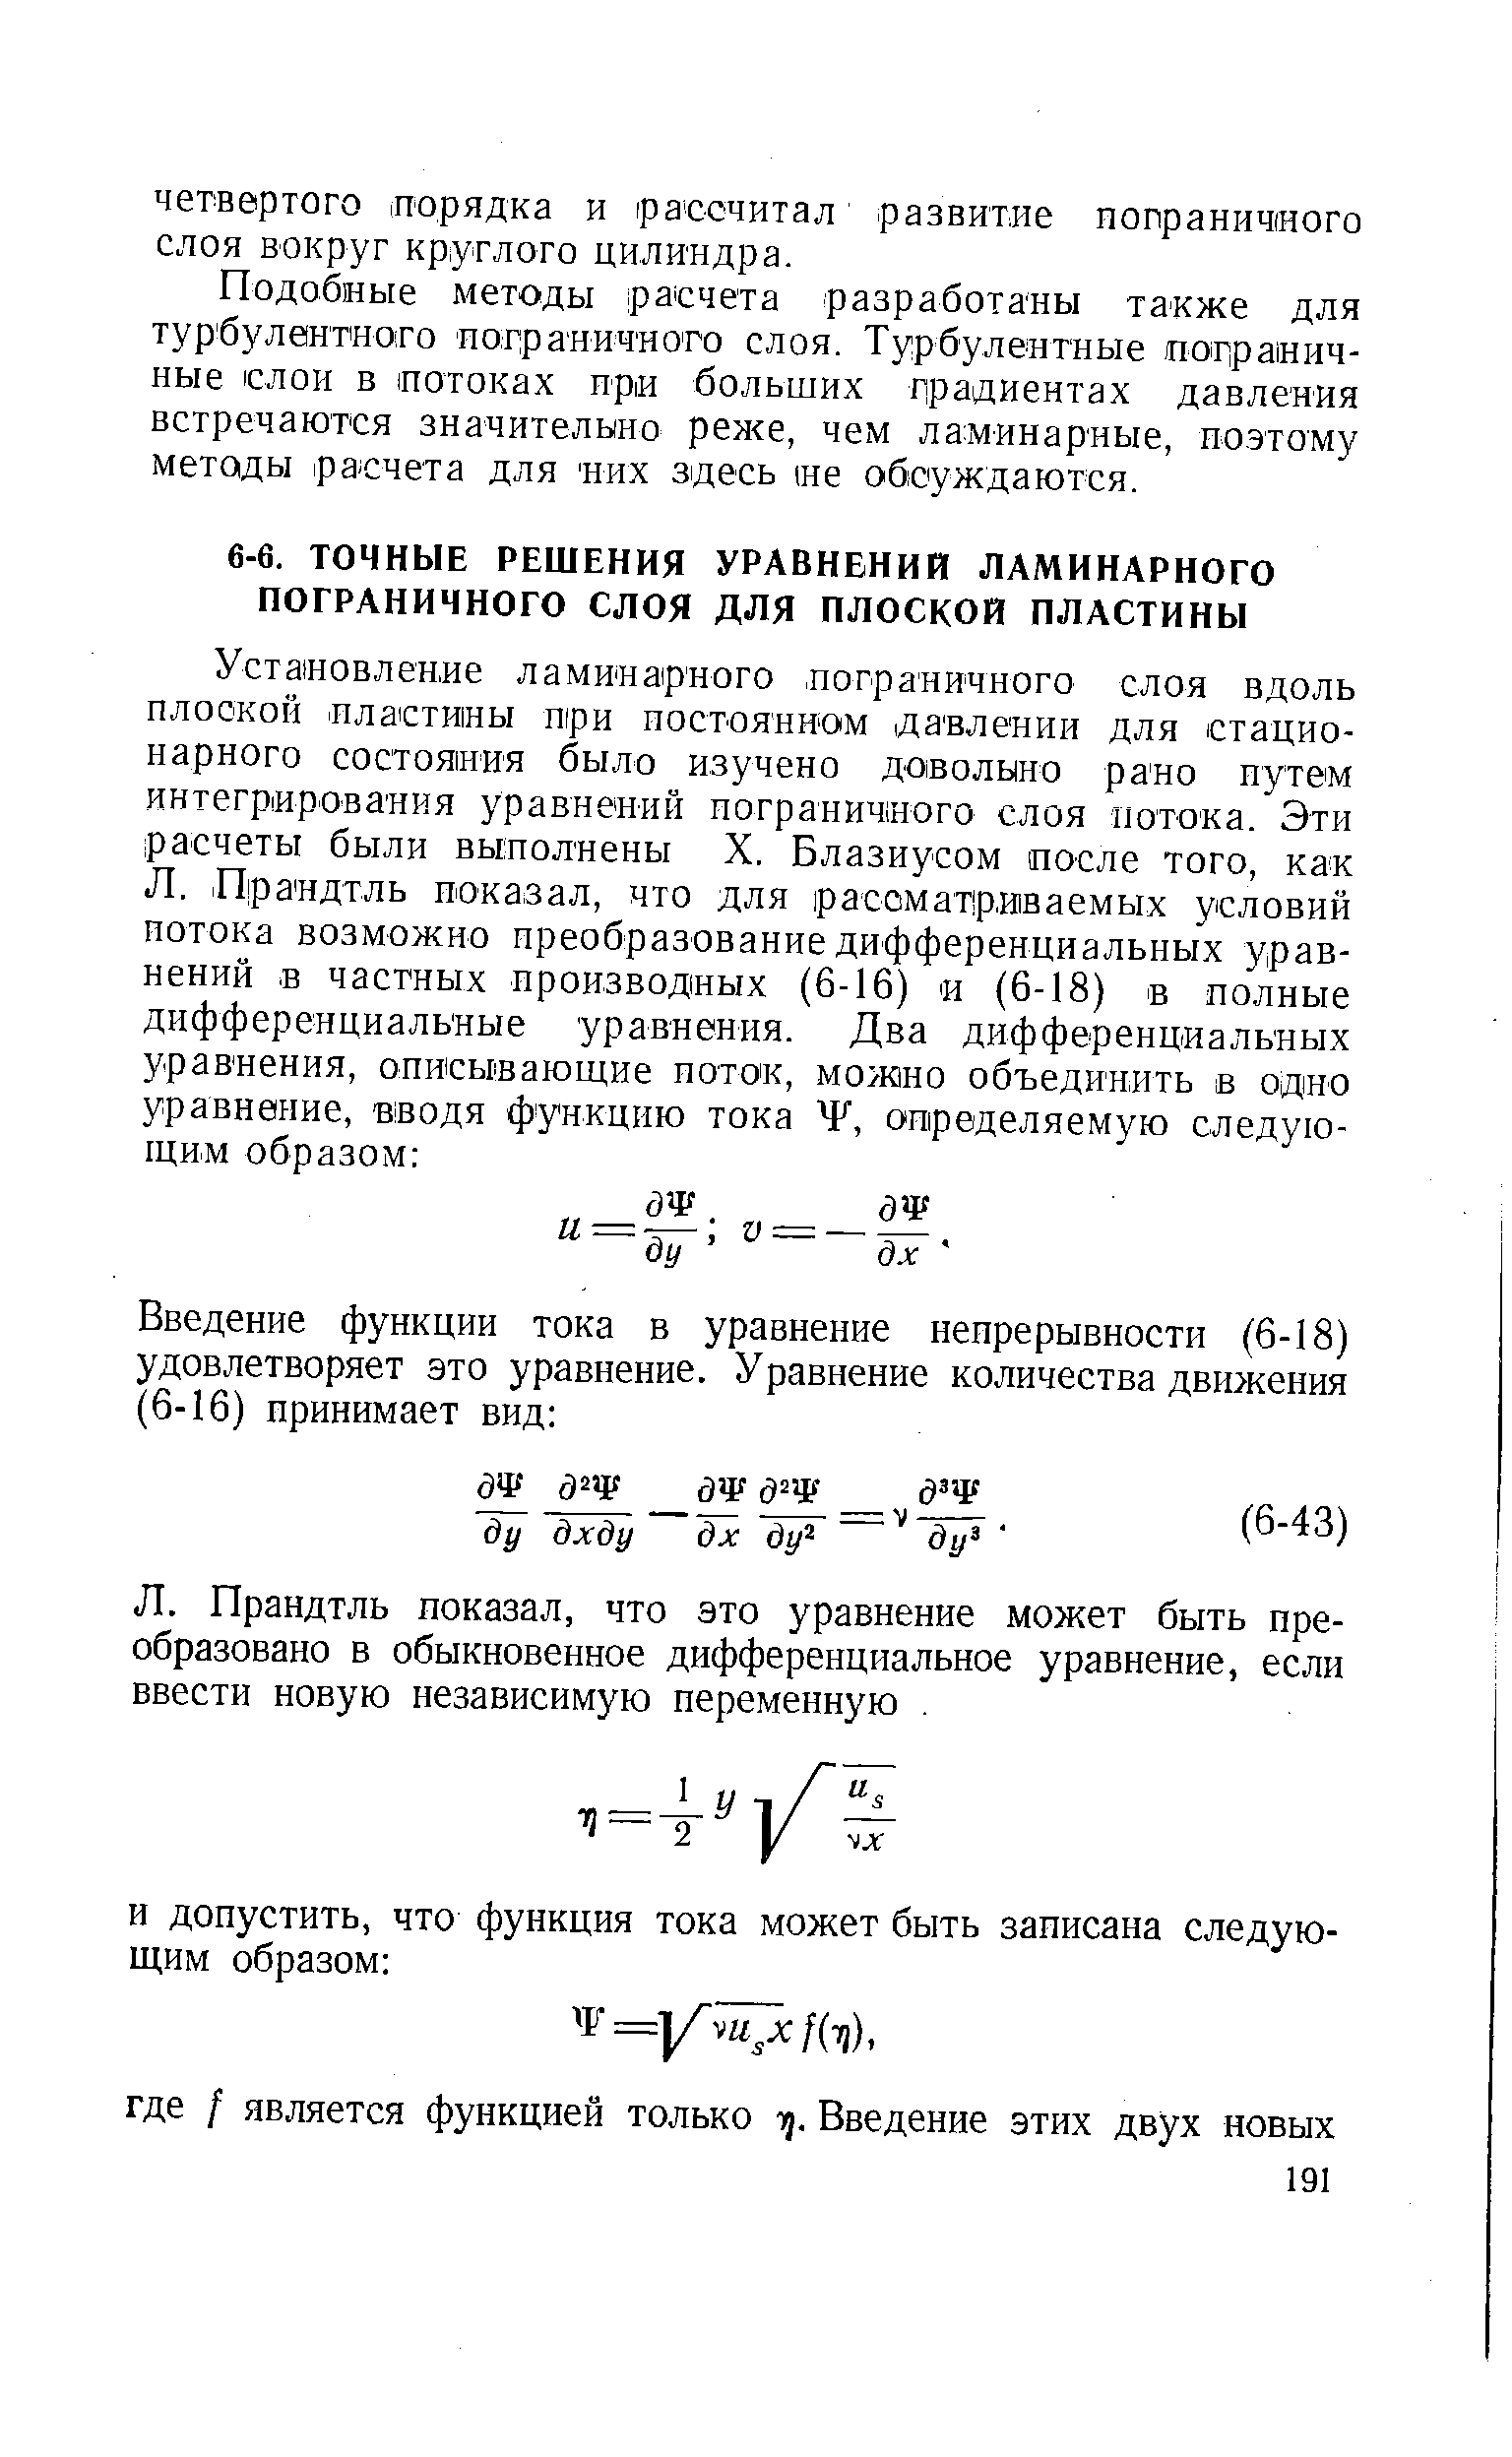 Прандтль показал, что это уравнение может быть преобразовано в обыкновенное дифференциальное уравнение, если ввести новую независимую переменную. 